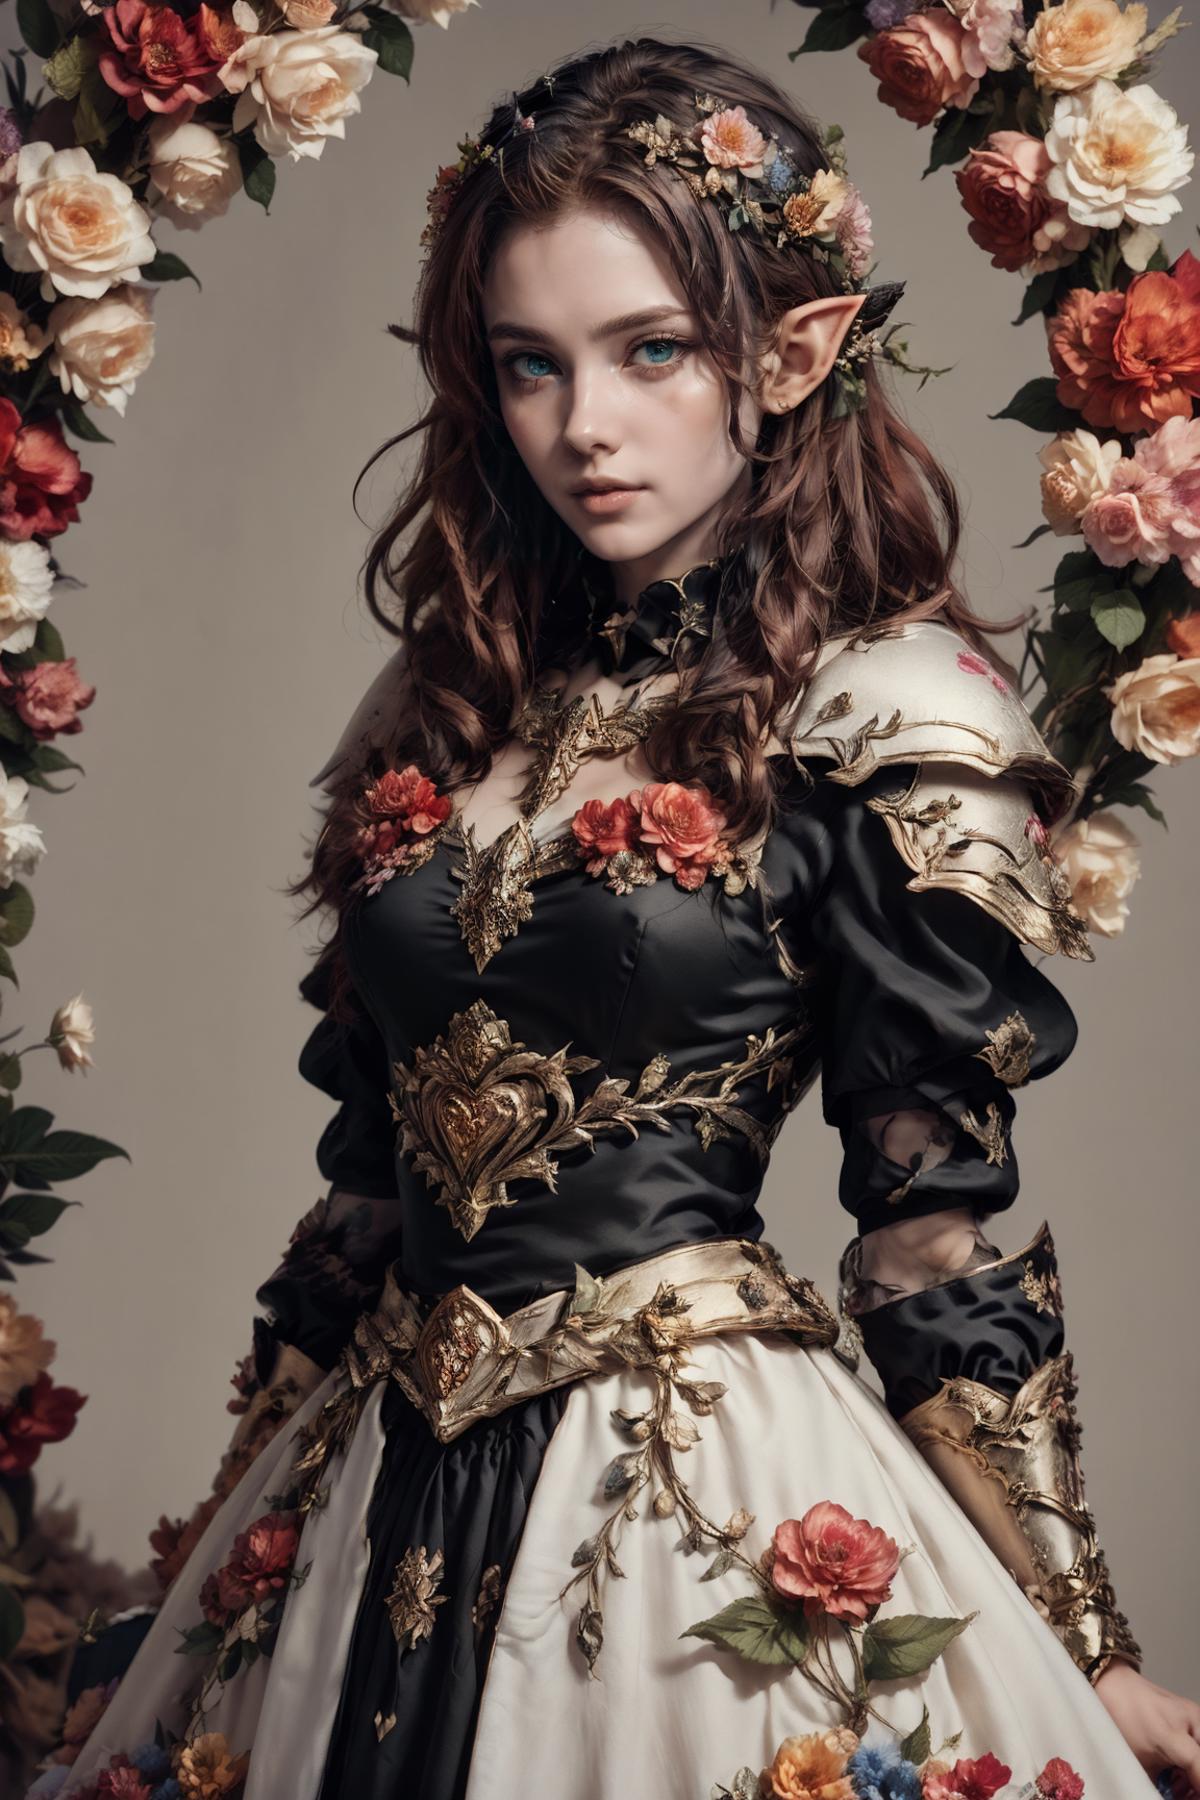 Flower Armor image by BerserkFG